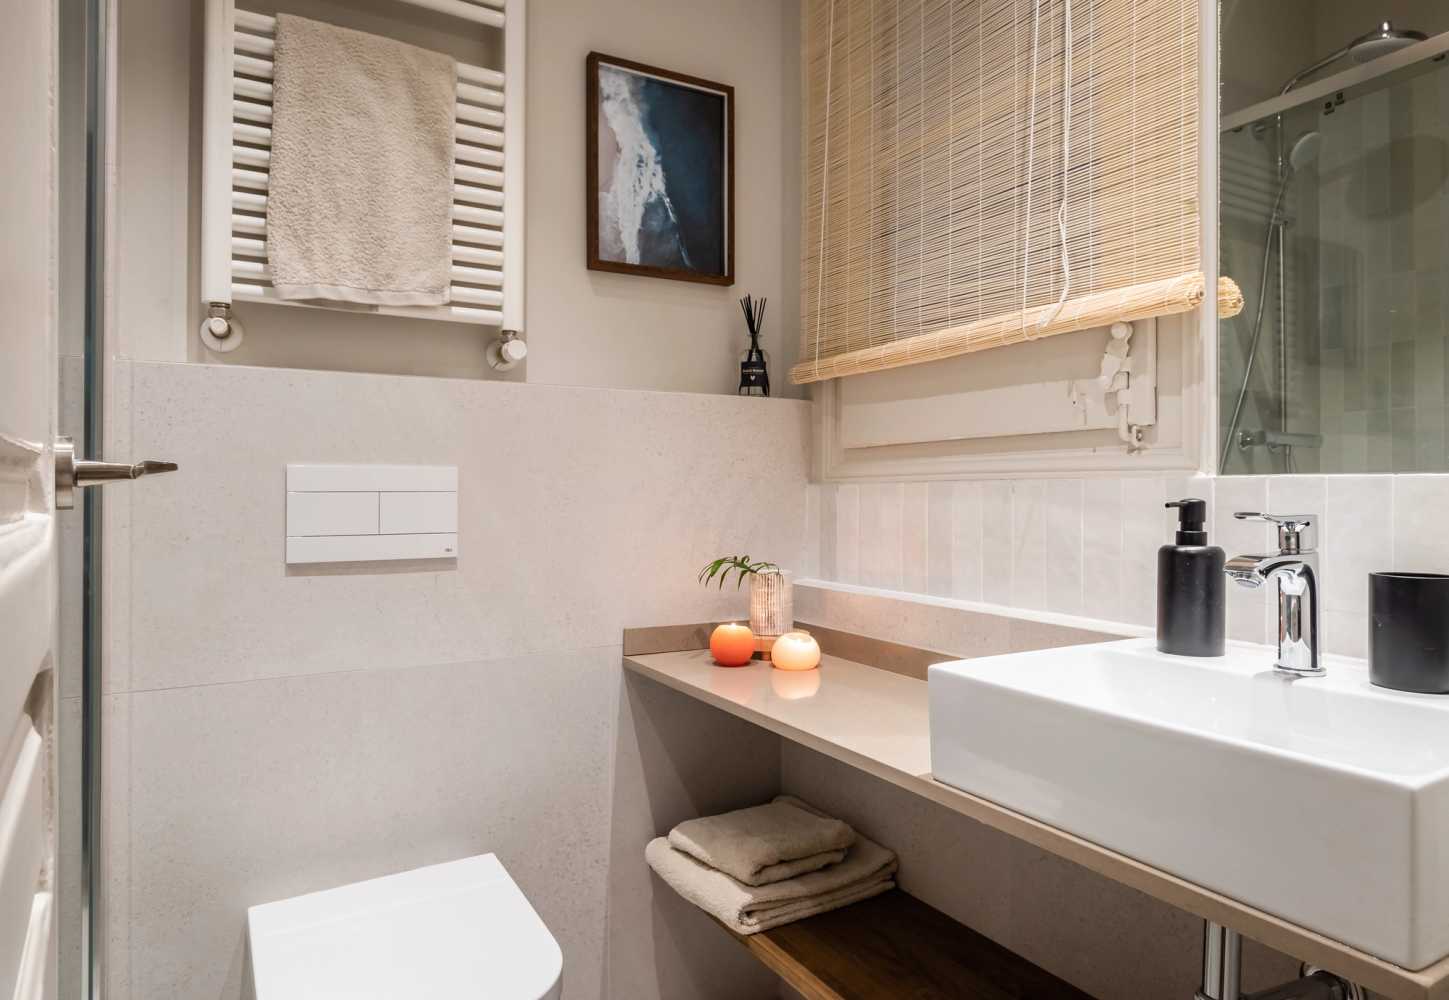 1654253370-bathroom-with-sink-monthly-rental-eixample.jpg